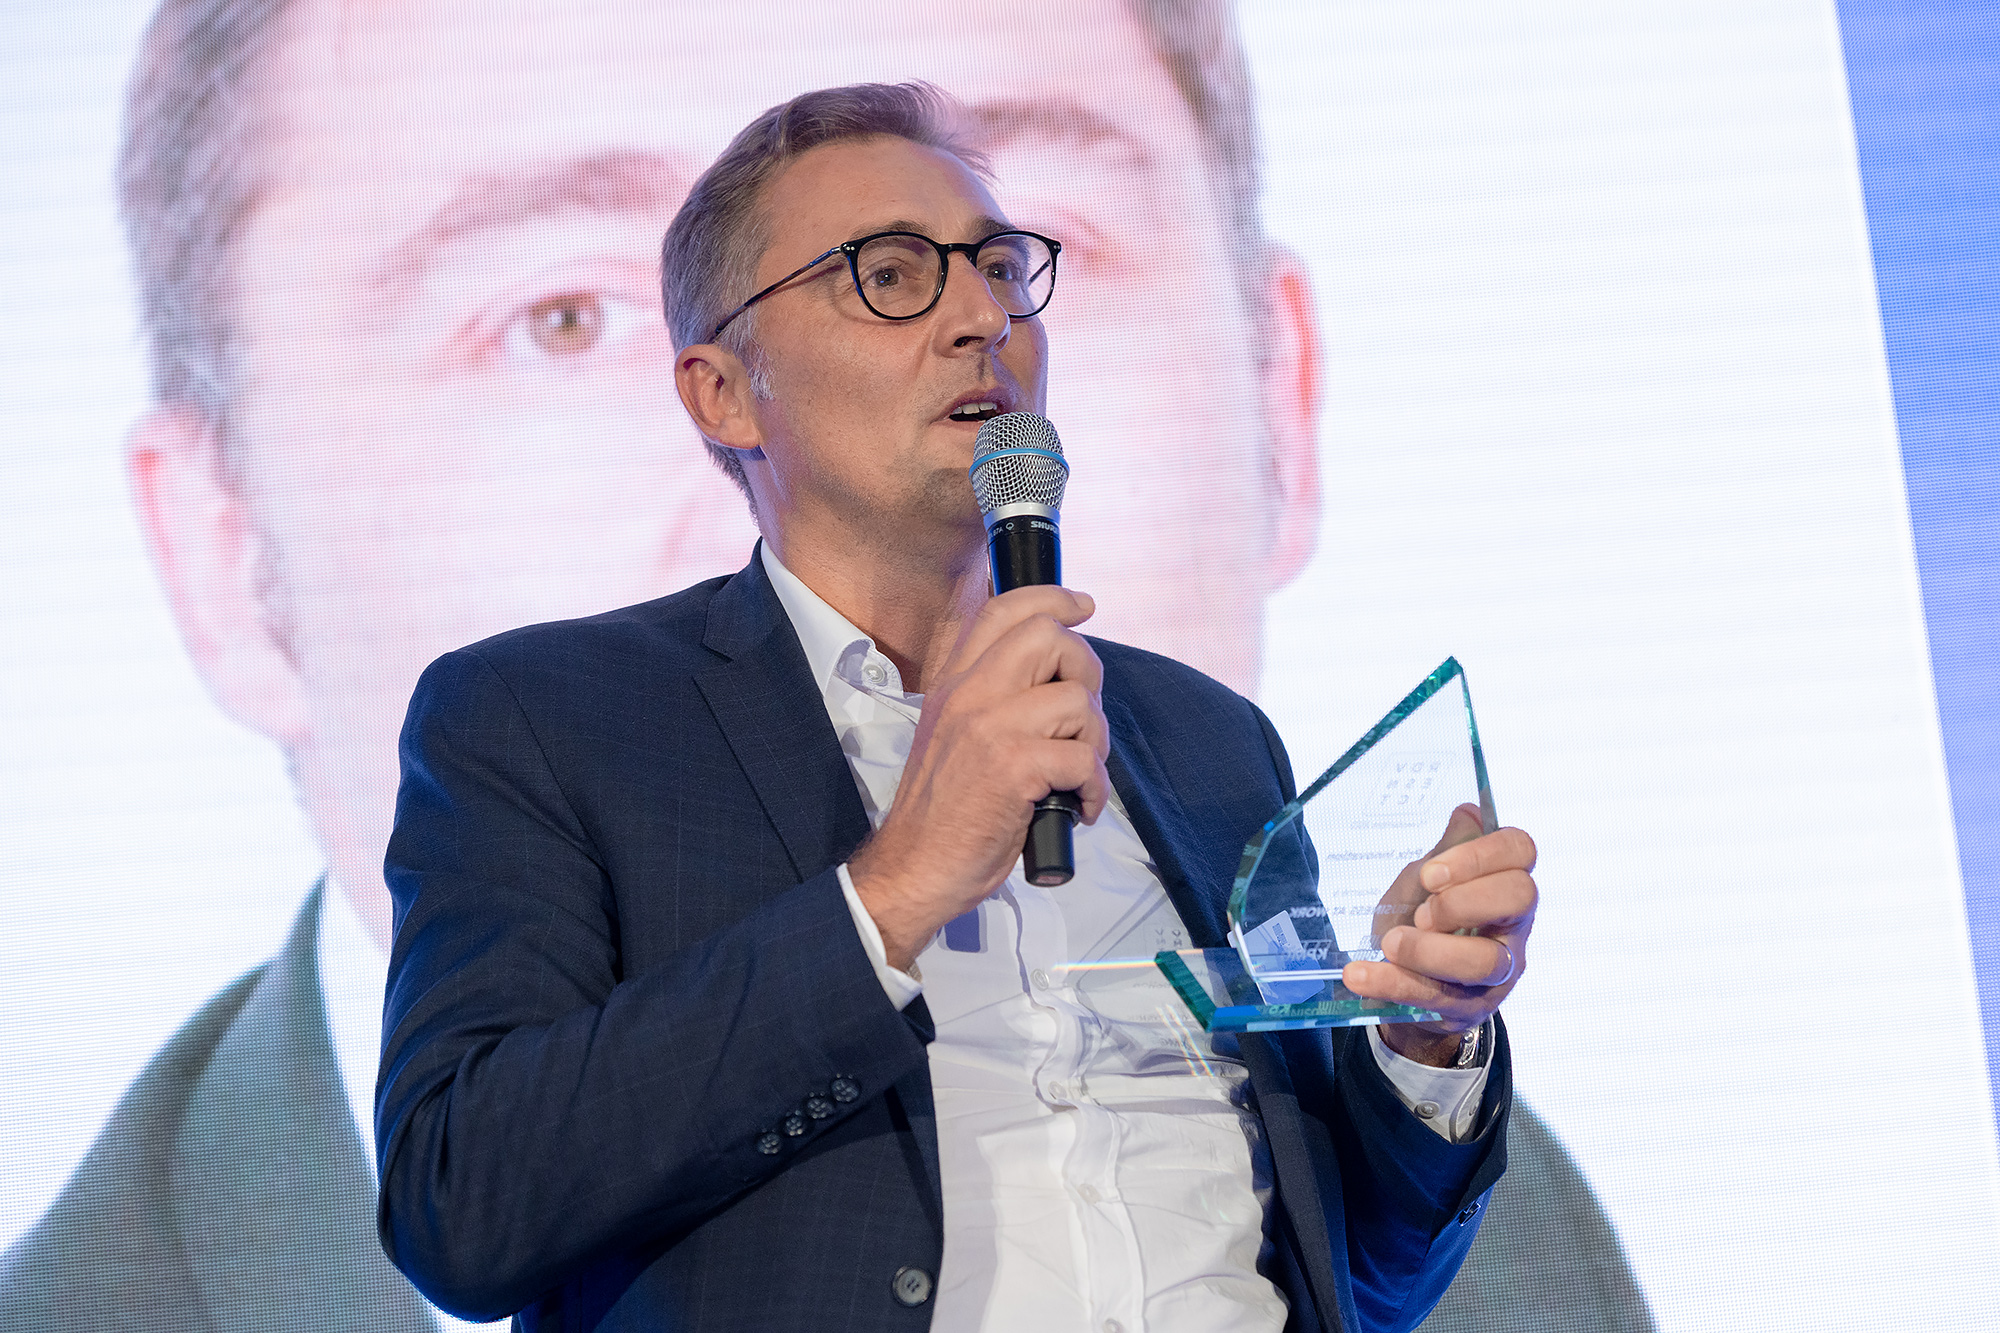 Business At Work Remporte Le Prix Innovation Des Trophées Des ESN & ICT 2022 Décernés Par Numeum Et KPMG